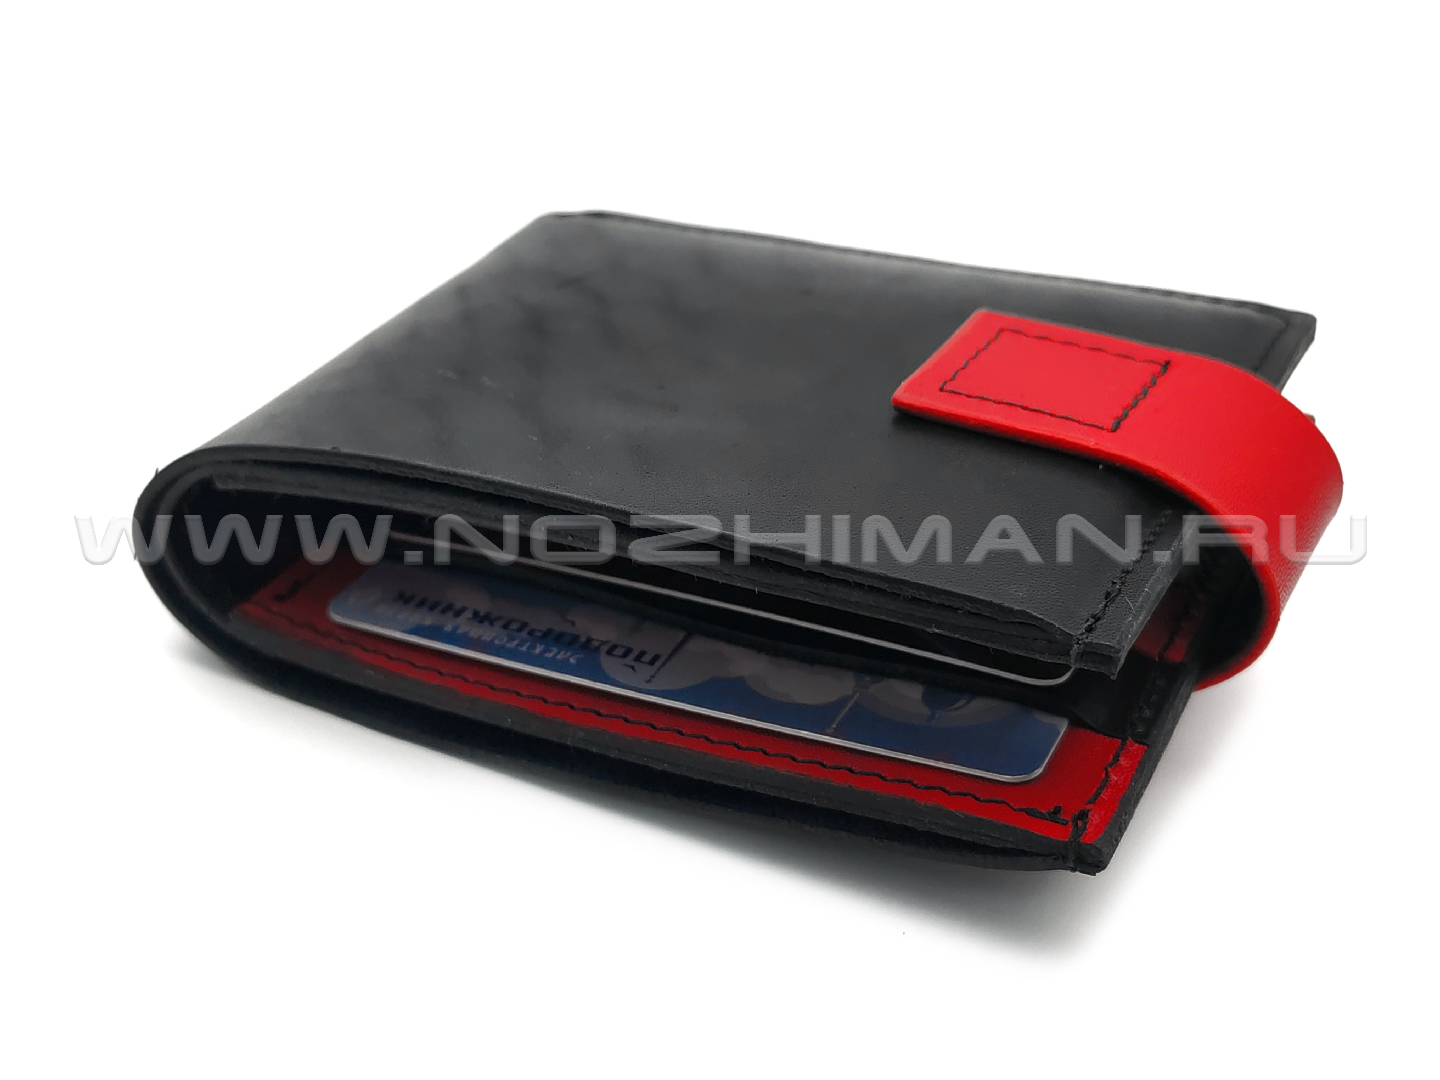 Кошелек с клапаном, 1 карман, 6 карт NK0170 натуральная кожа, черно-красный